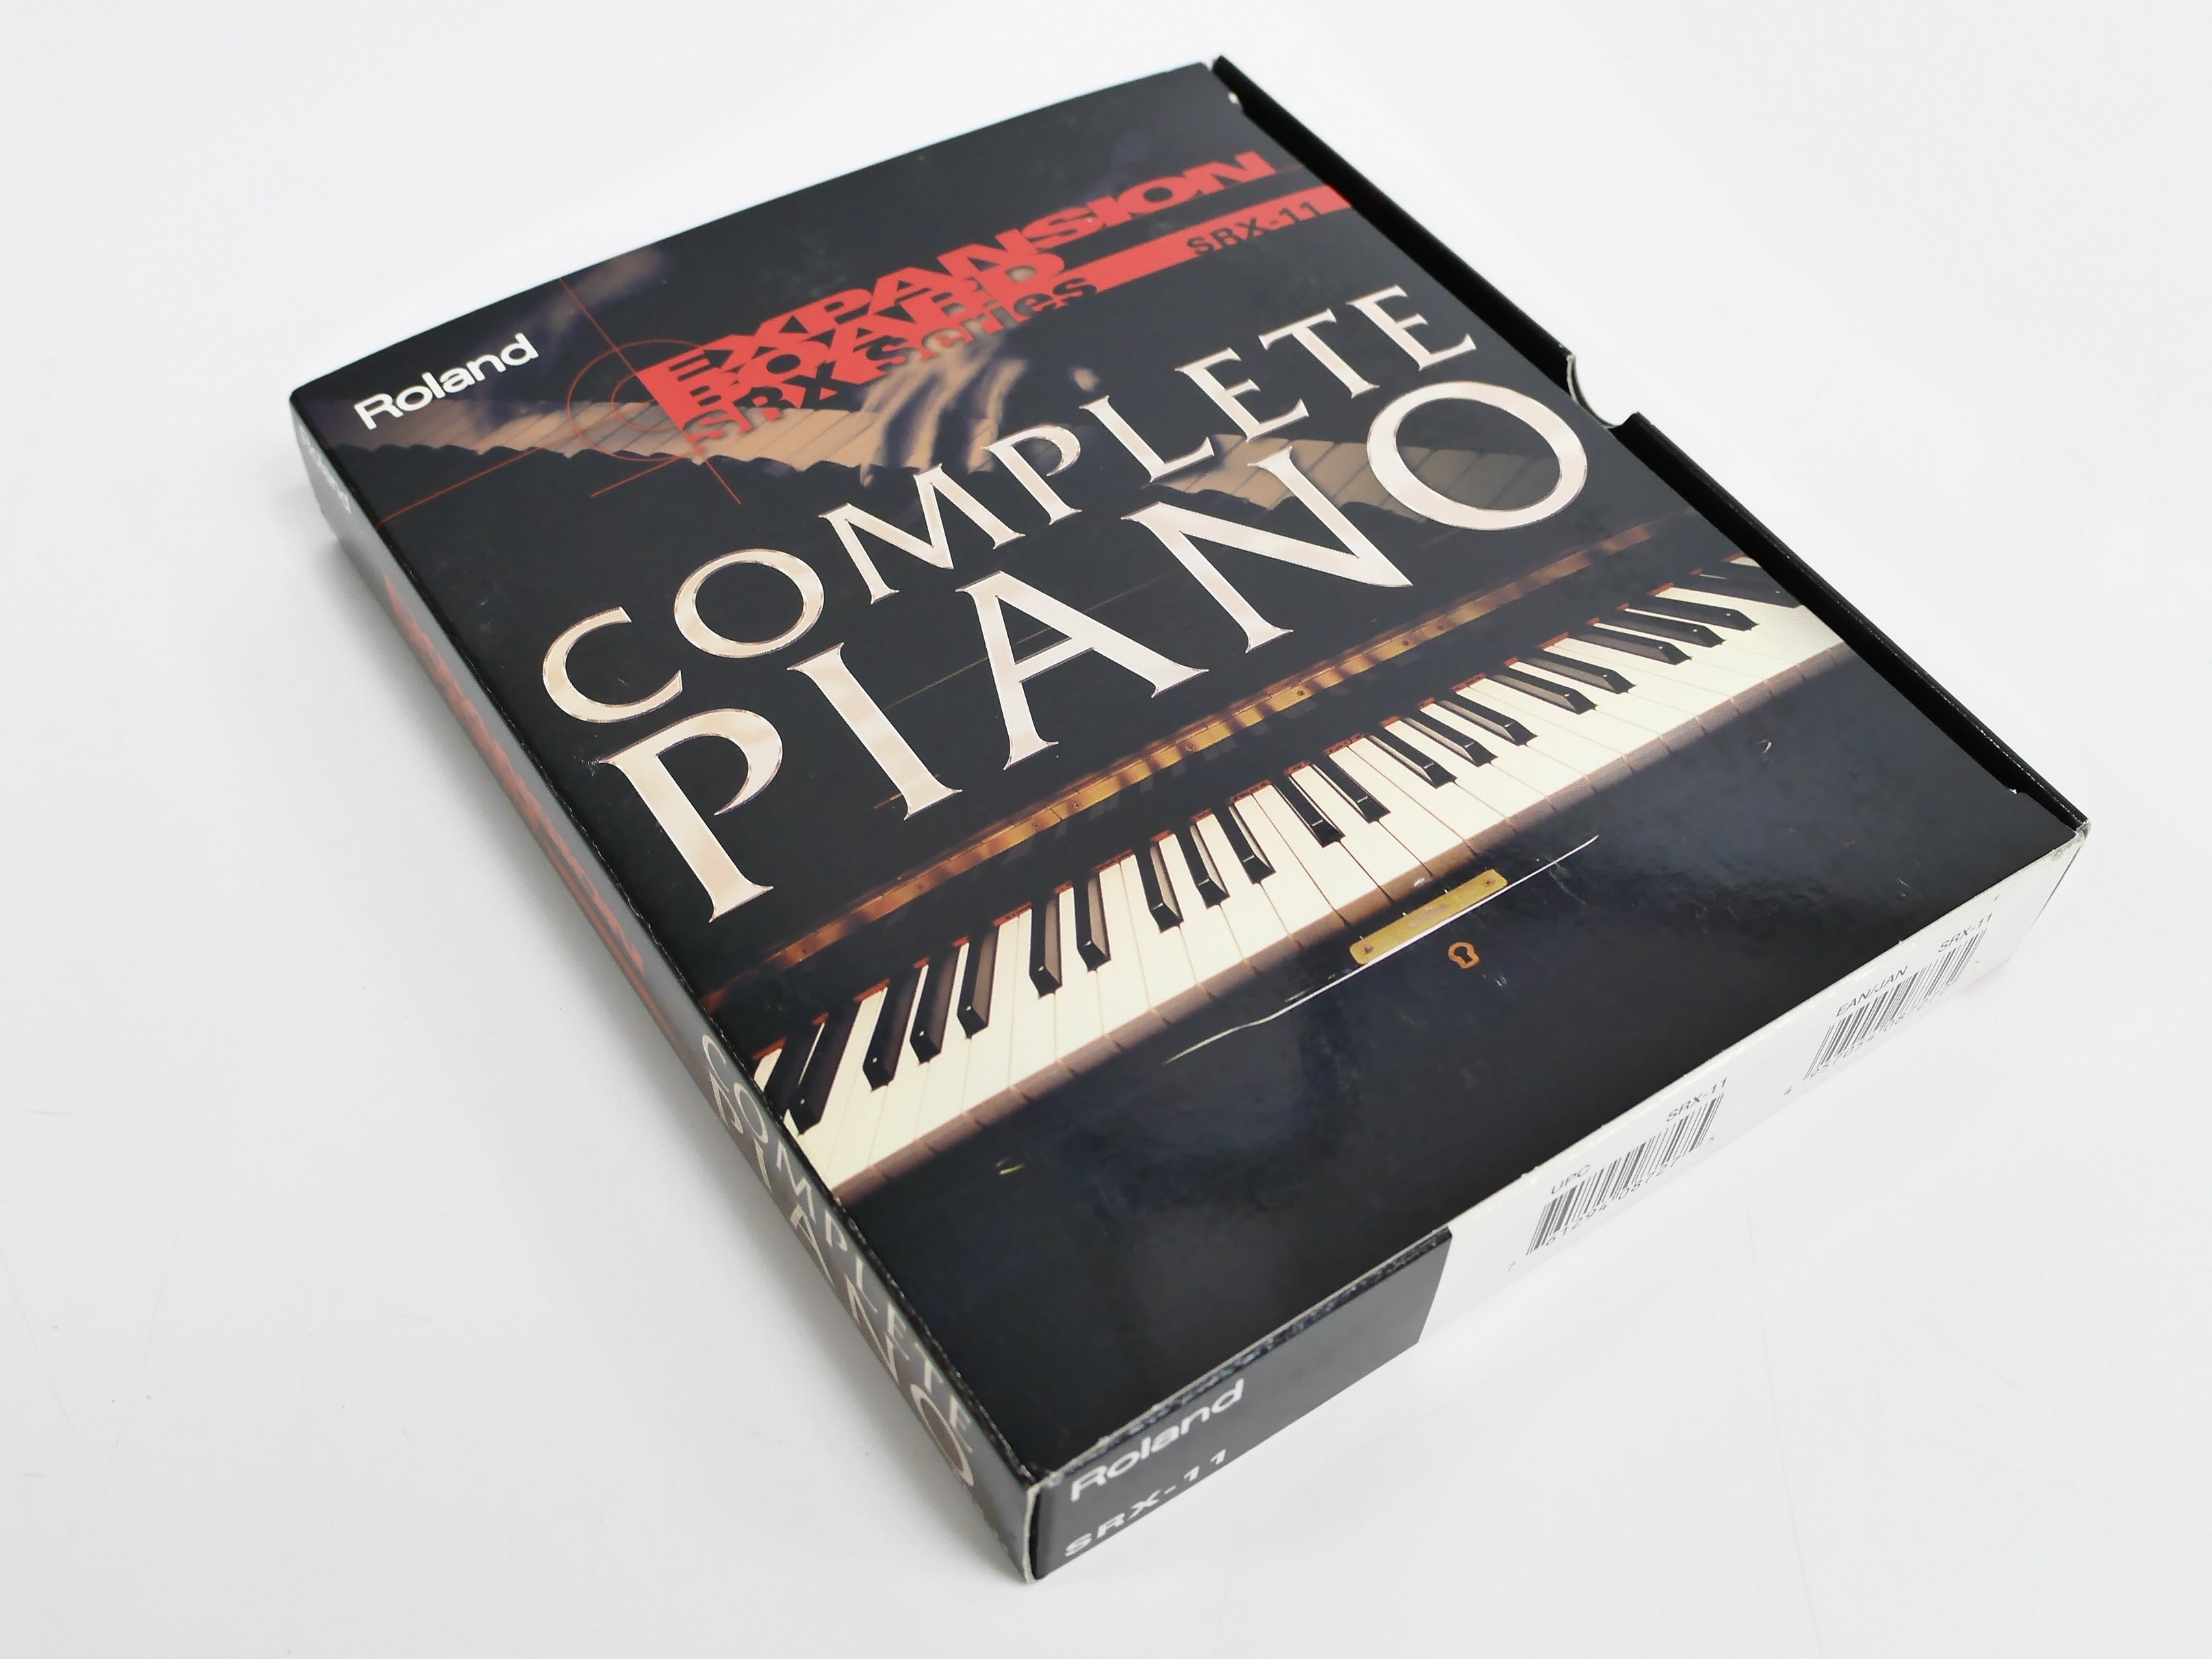 Roland SRX-11 COMPLETE PIANO